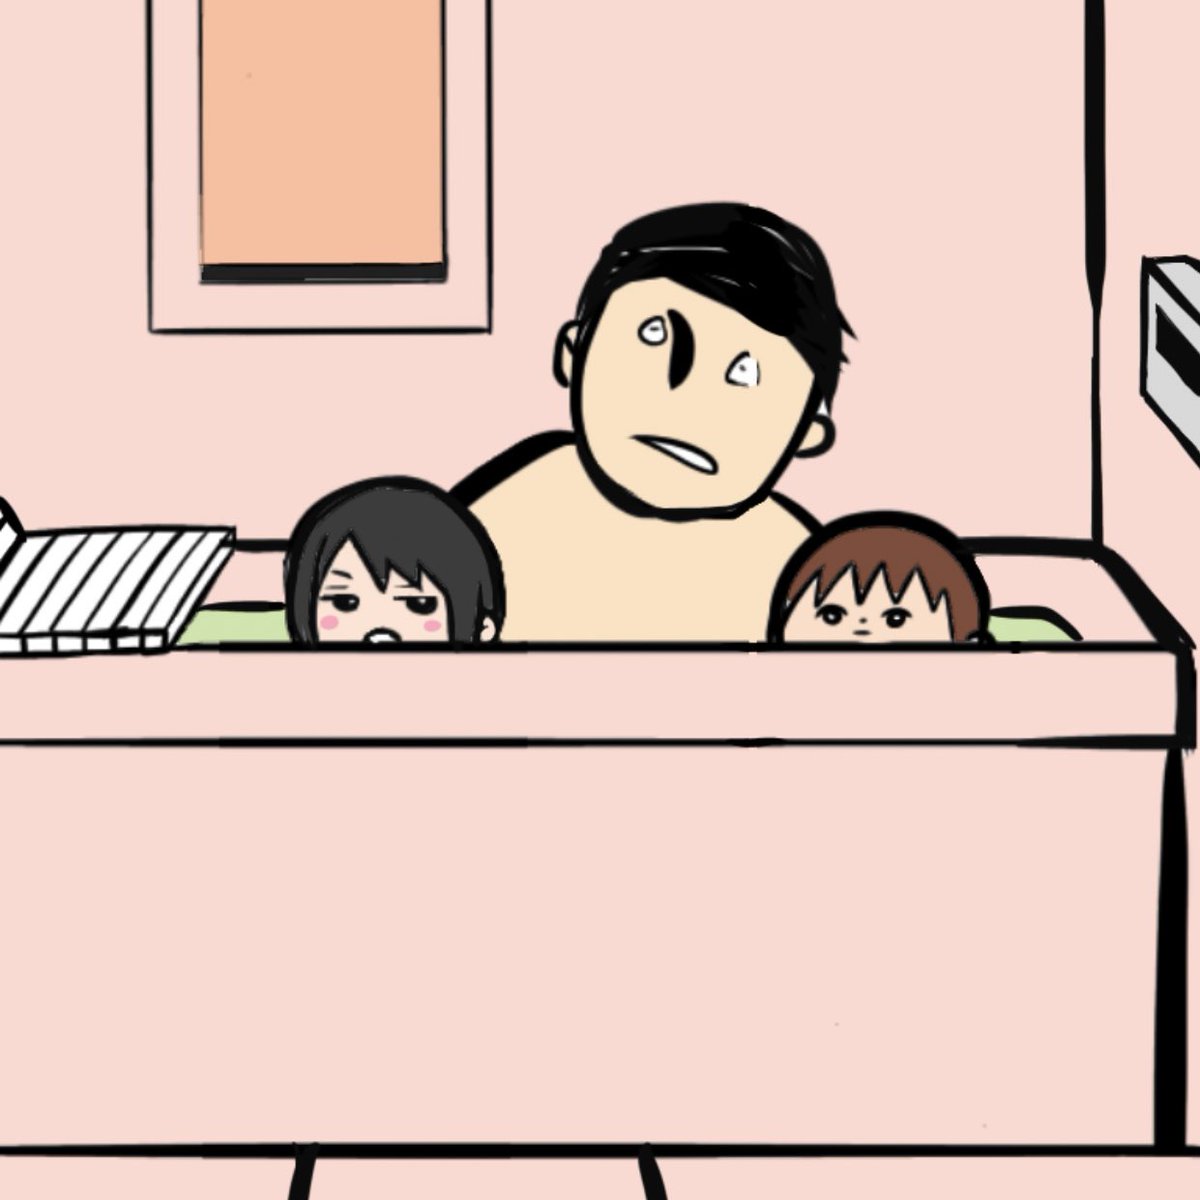 4コマ漫画「お風呂」
いいね、RTありがとうございます🥺

休まらない子供たちとのお風呂♨️
これもあと数年と思うとなんやかんや寂しいものです。 https://t.co/63pWBDGDzK 